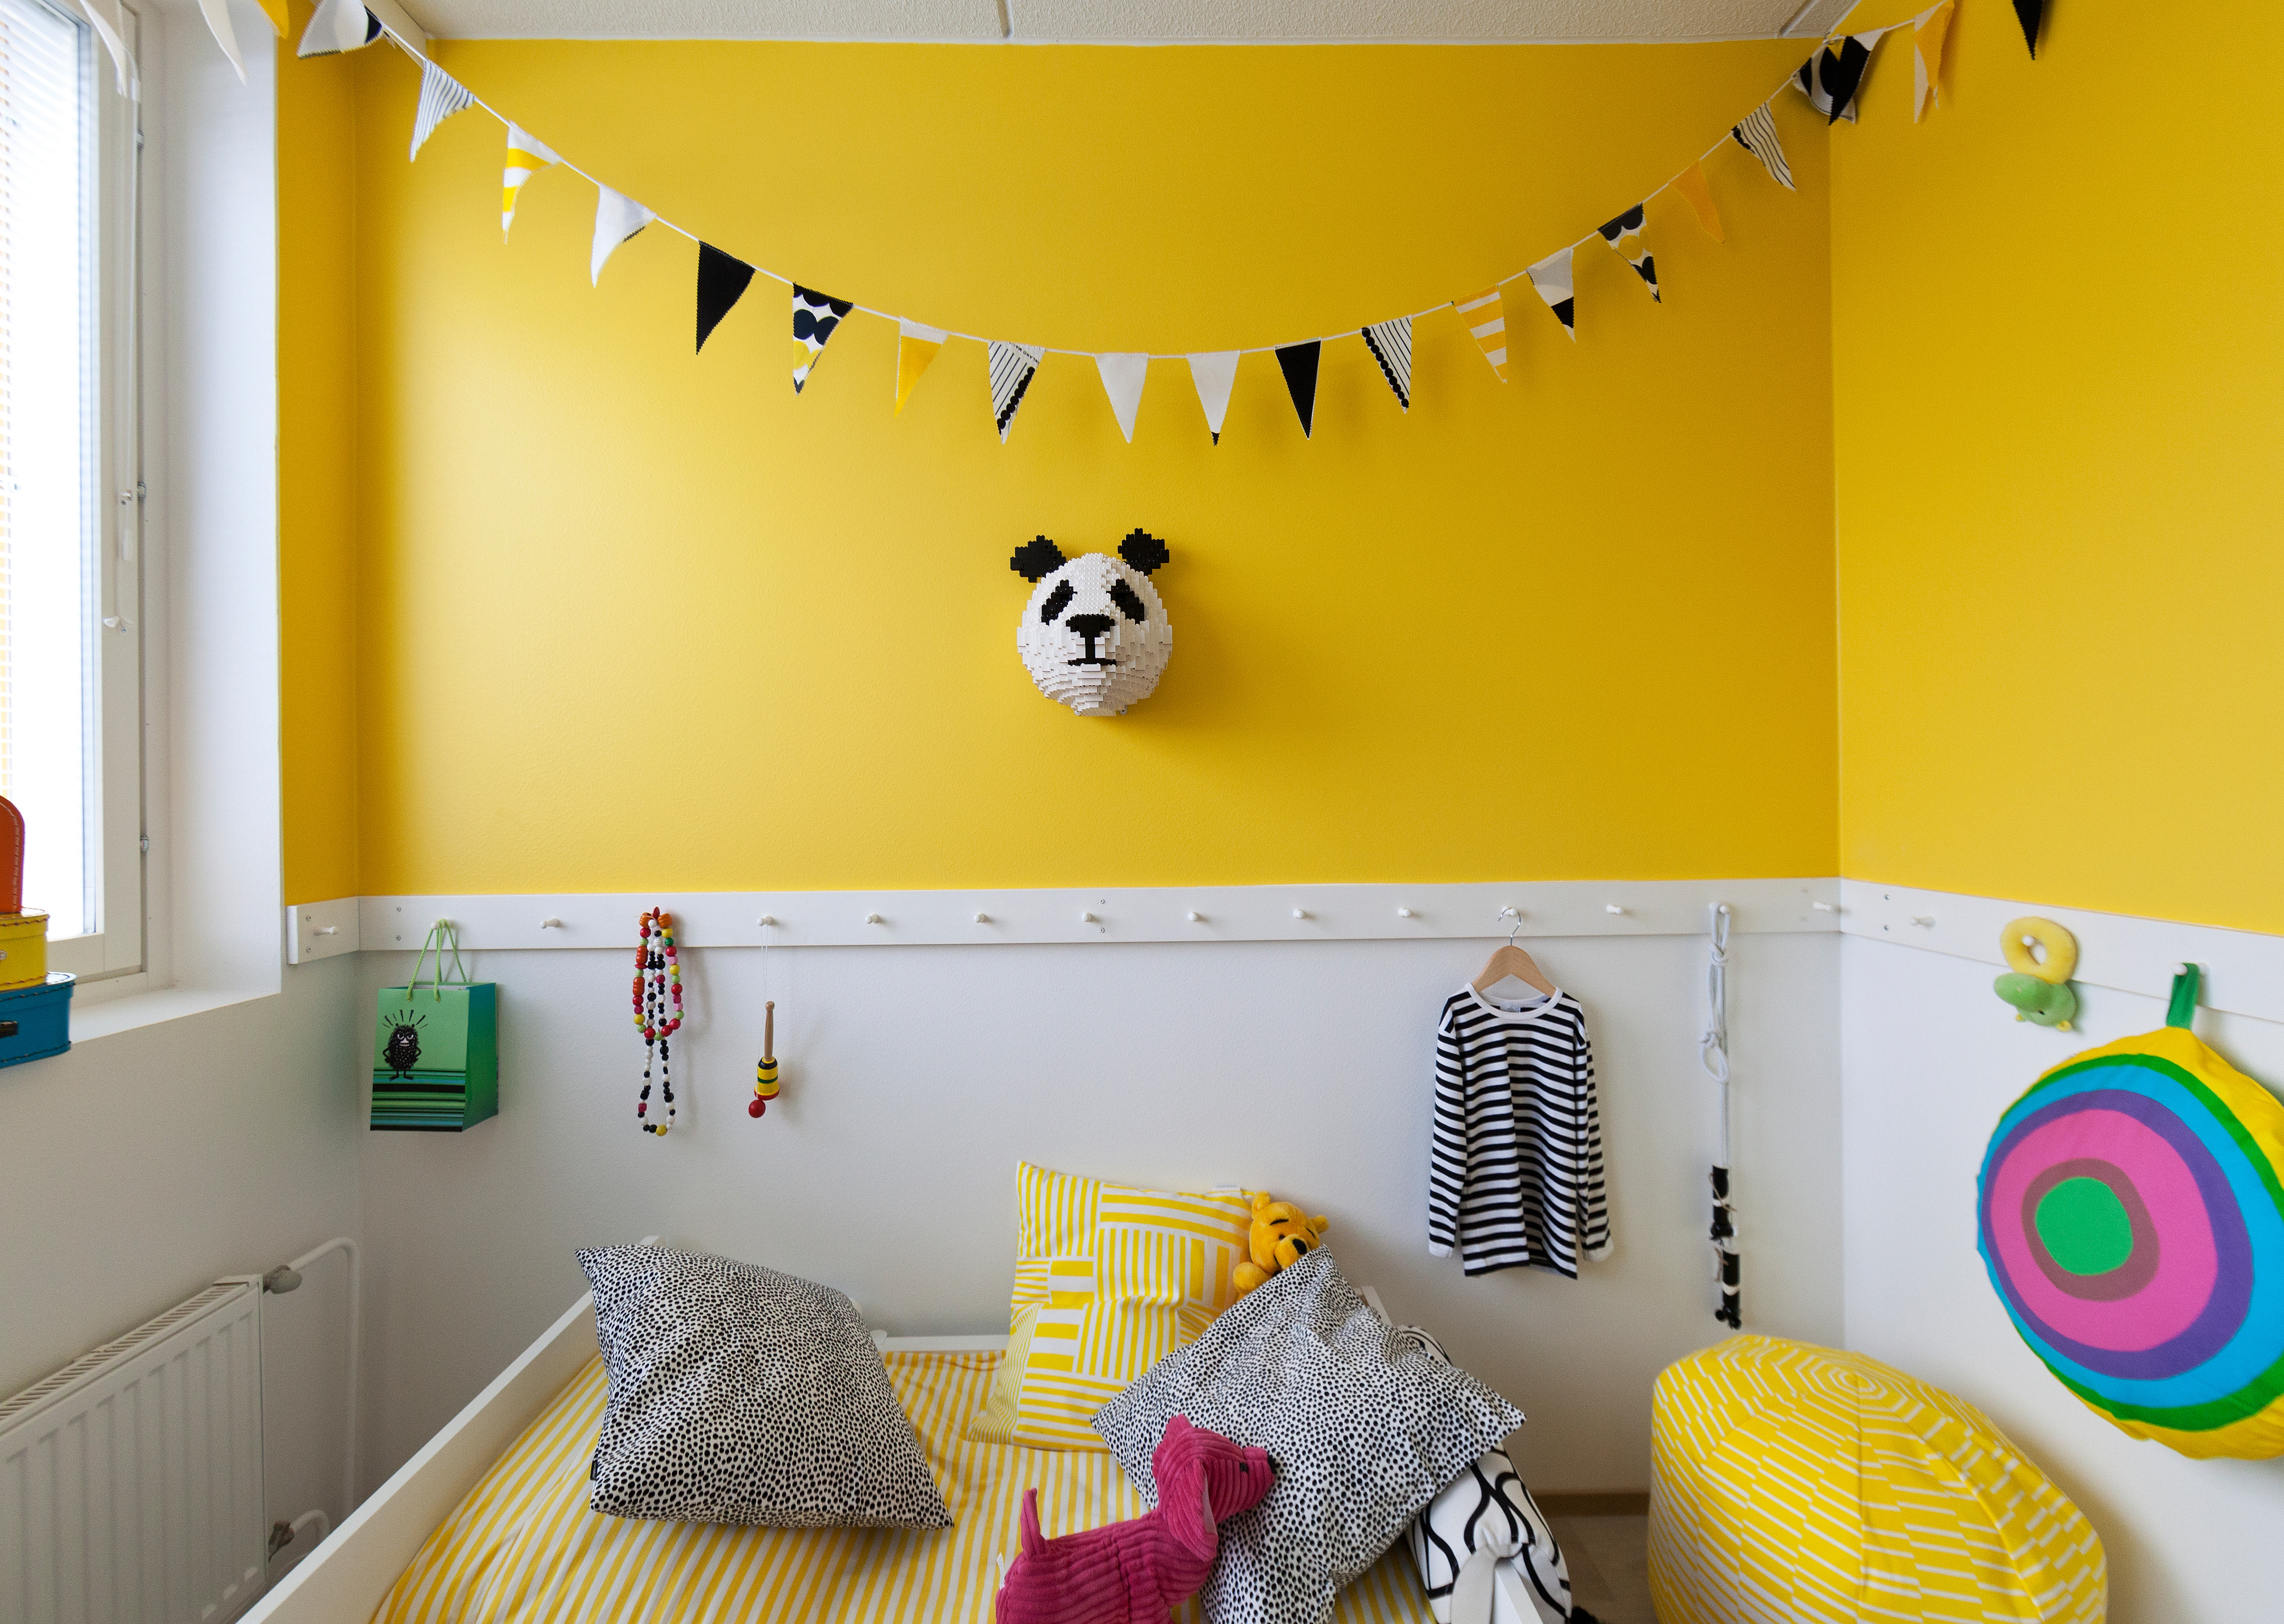 以黄色为主色调的墙面，为我们创造出全新的视觉体验。这种明目张胆的用色并不显夸张，反而多了几分俏皮，让人不禁产生愉快的遐想。（实习编辑：辛莉惠）